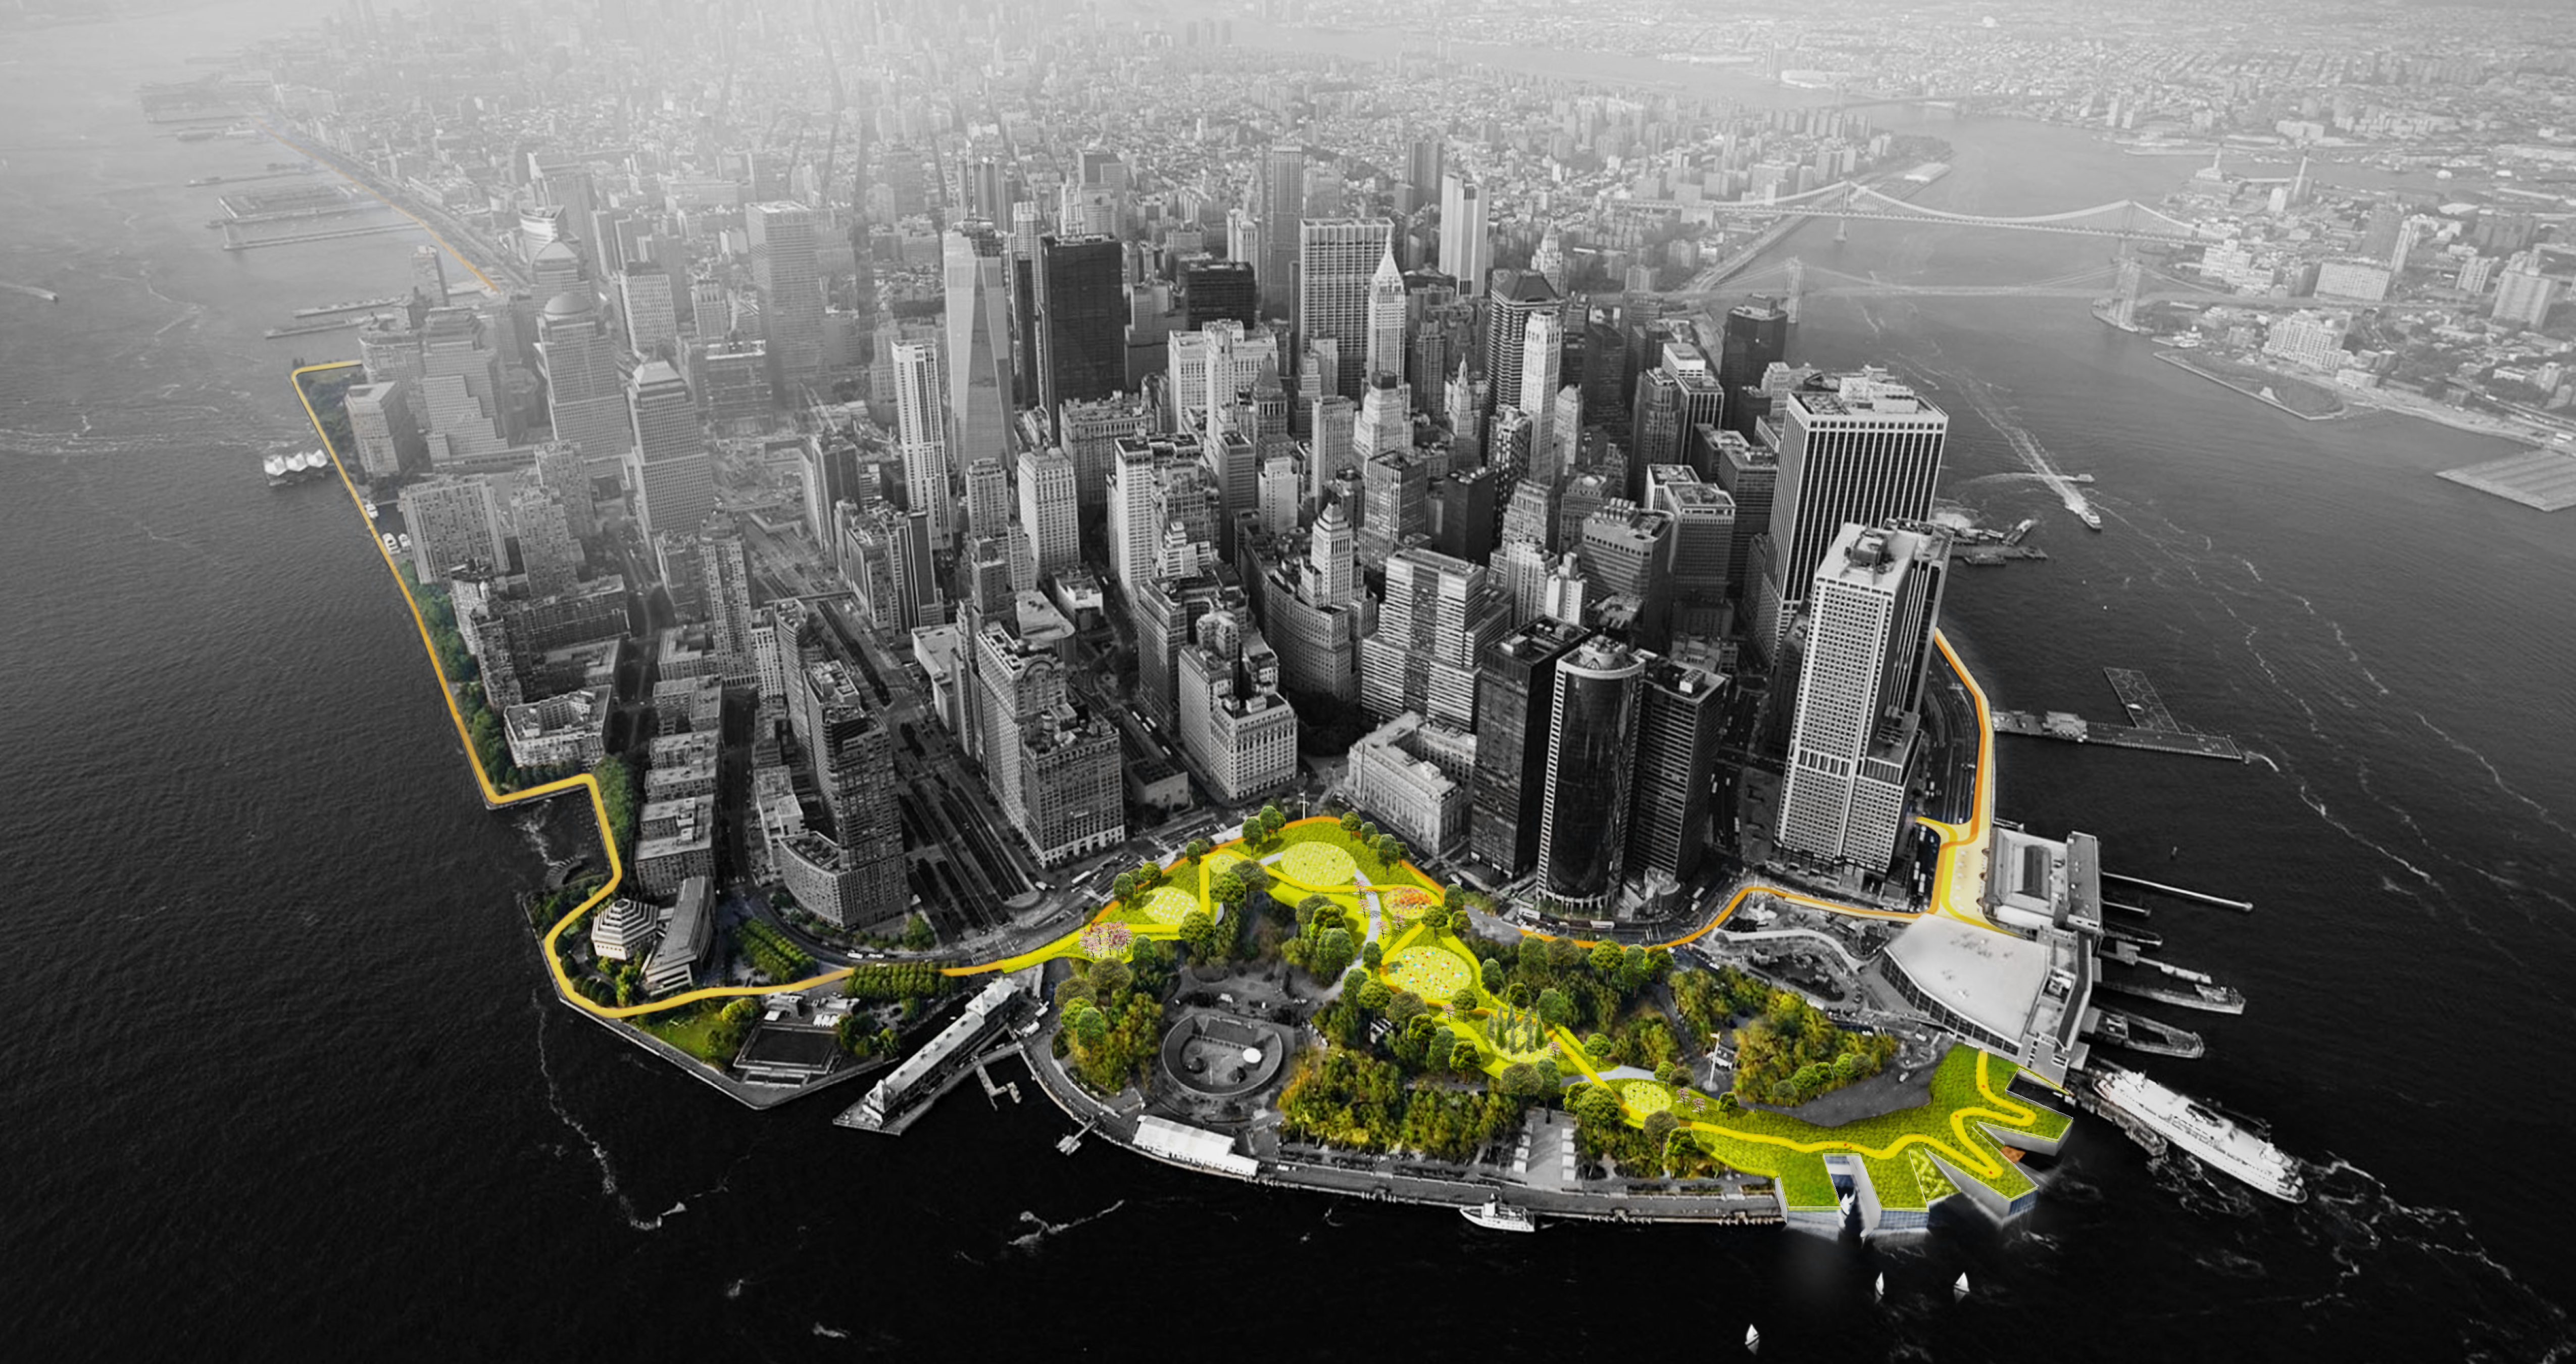 Vista aérea del bajo Manhattan. Los espacios verdes son de color verde y amarillo, mientras que el resto de la imagen es blanco y negro.